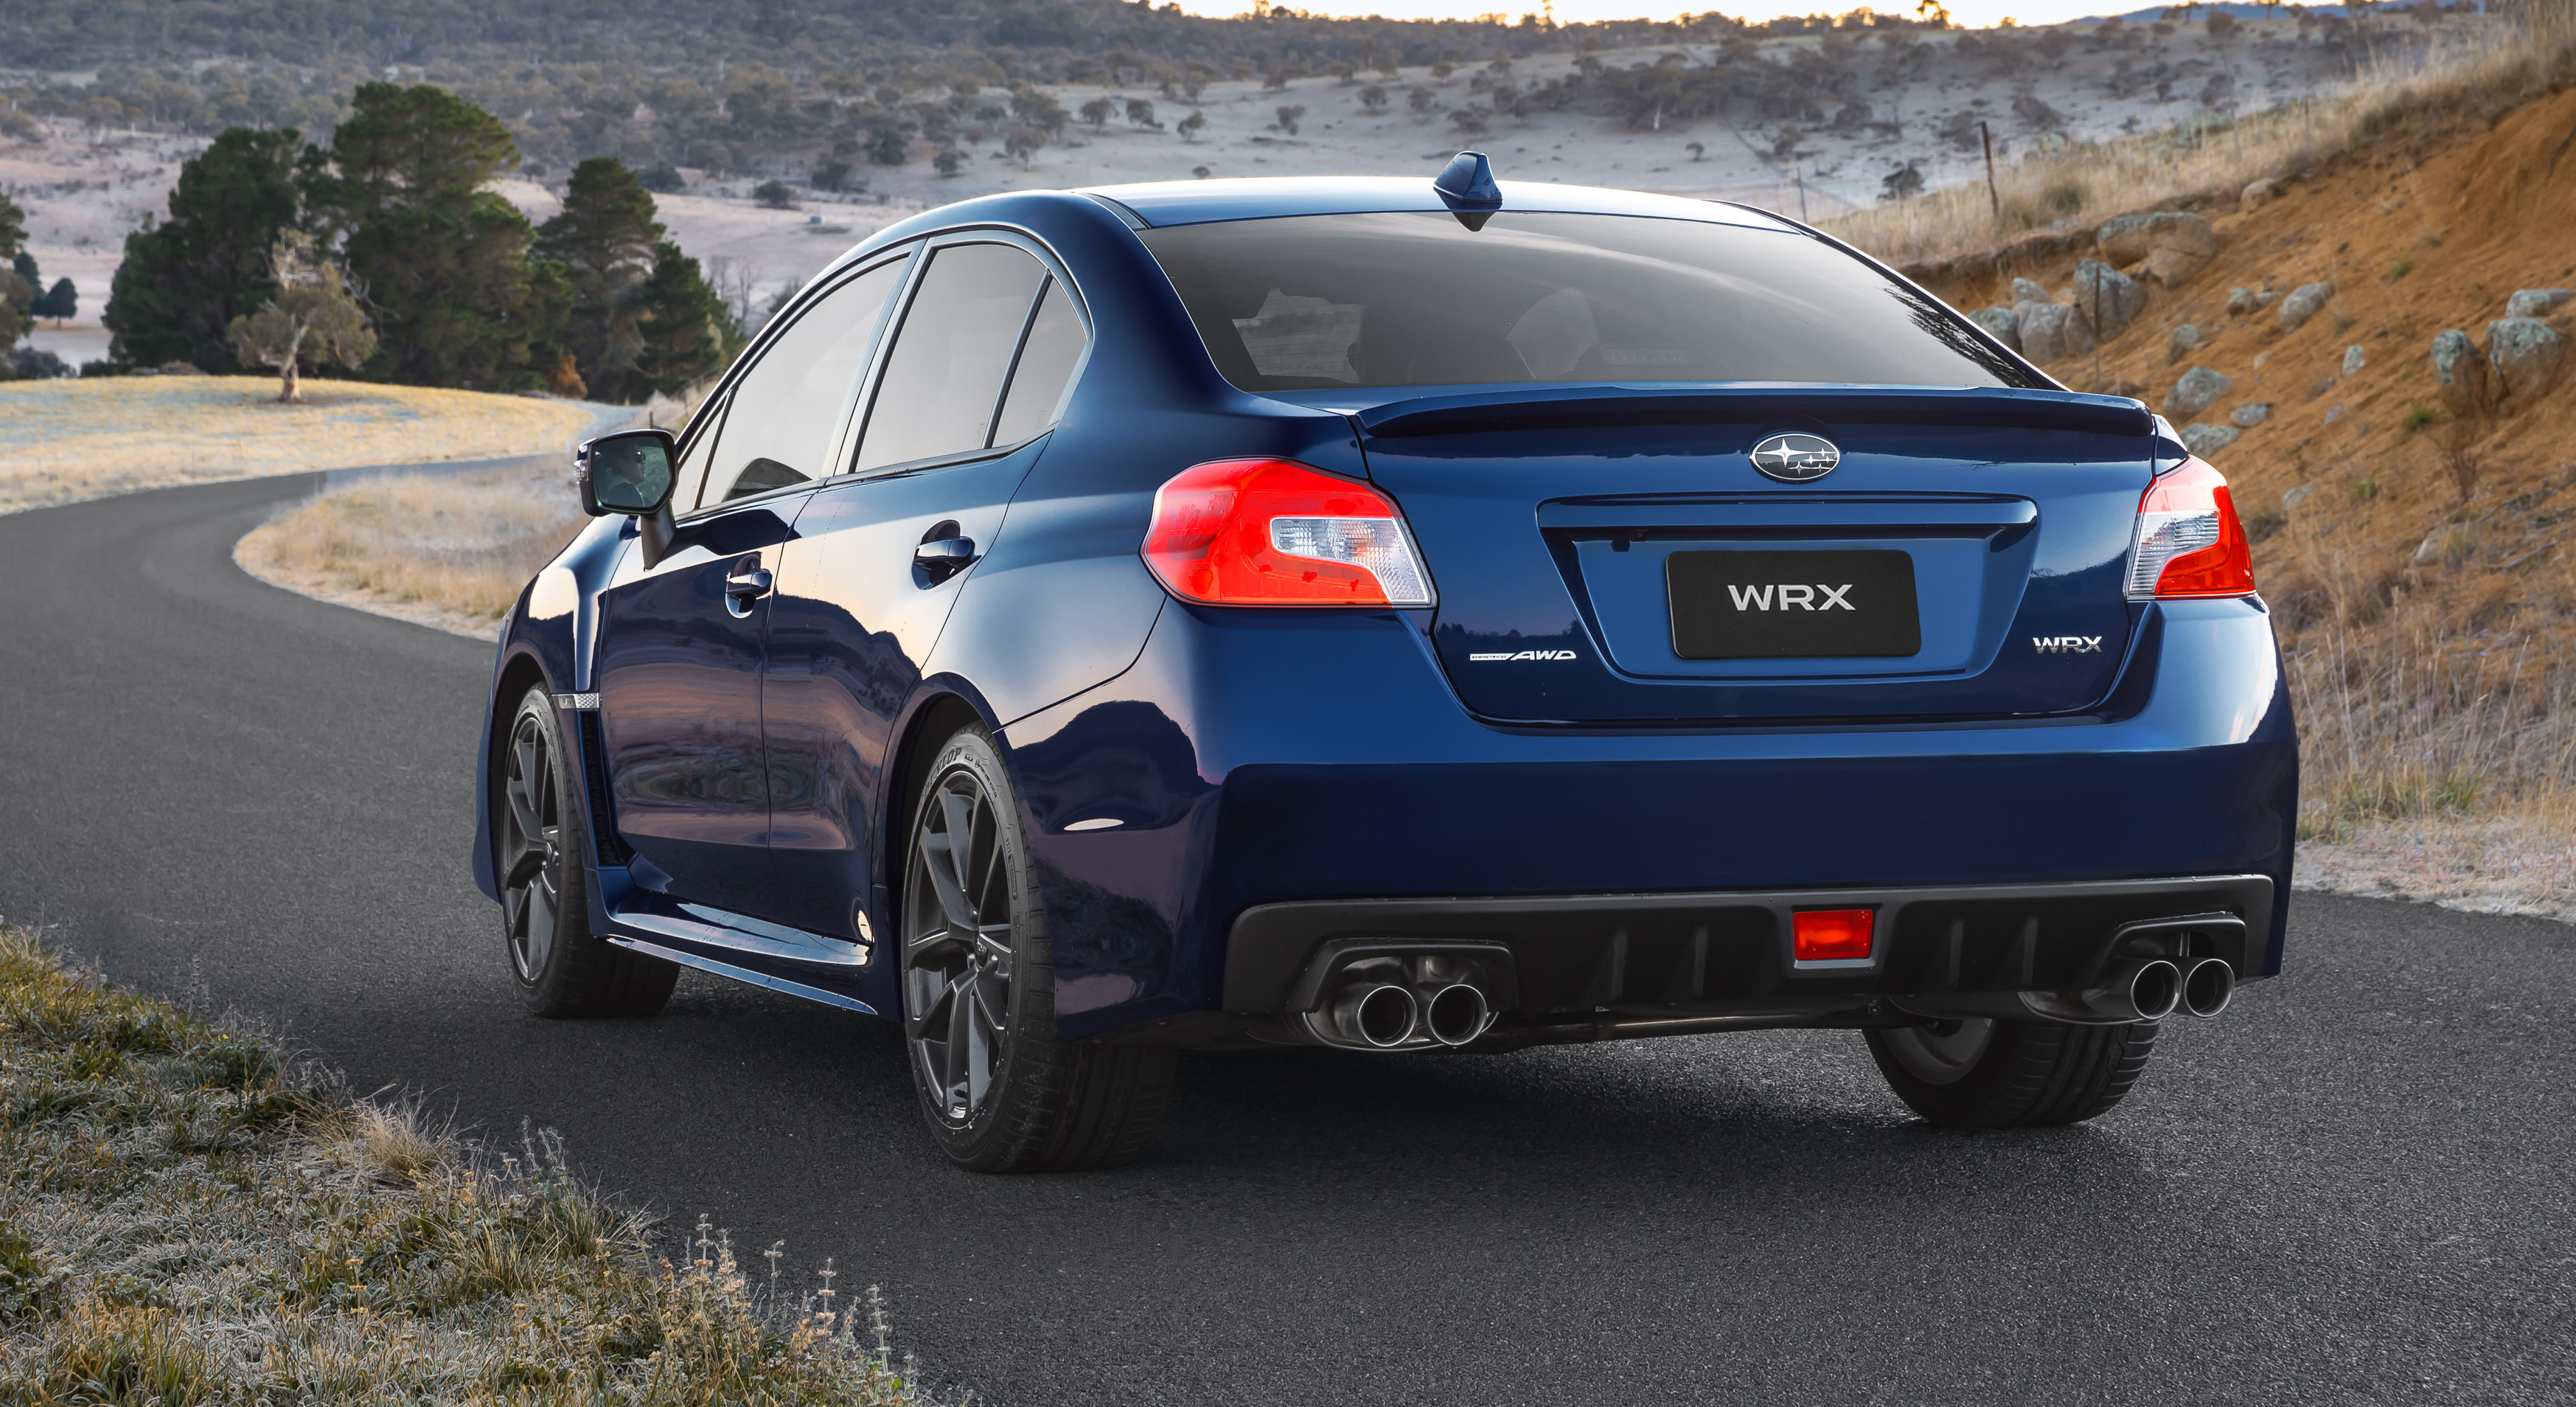 2018 Subaru WRX, WRX STI pricing and specs: Tweaked looks, more kit - photos  CarAdvice